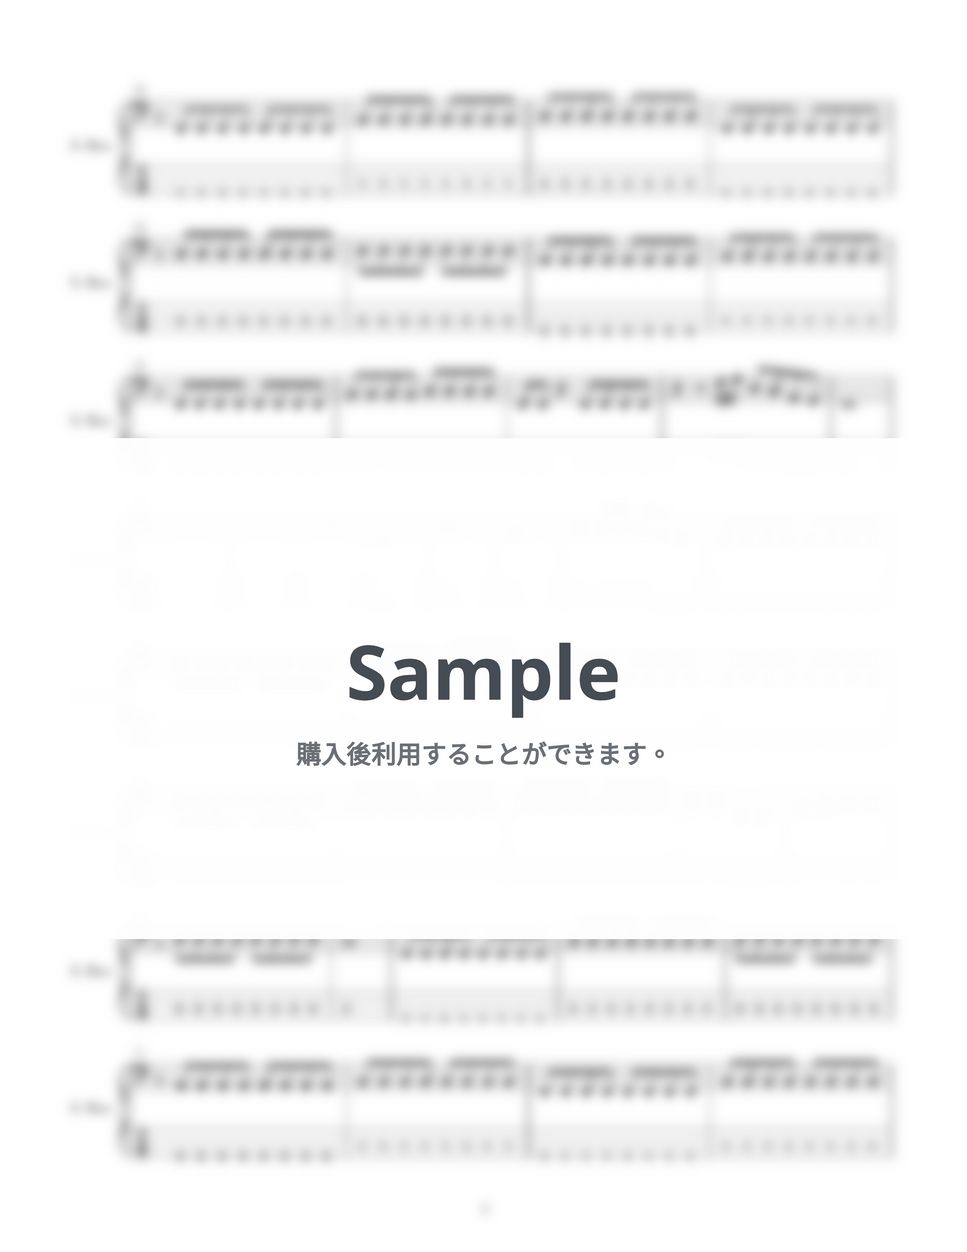 あいみょん - 桜が降る夜は (４弦ベースTAB譜、PDF4枚) by G's score